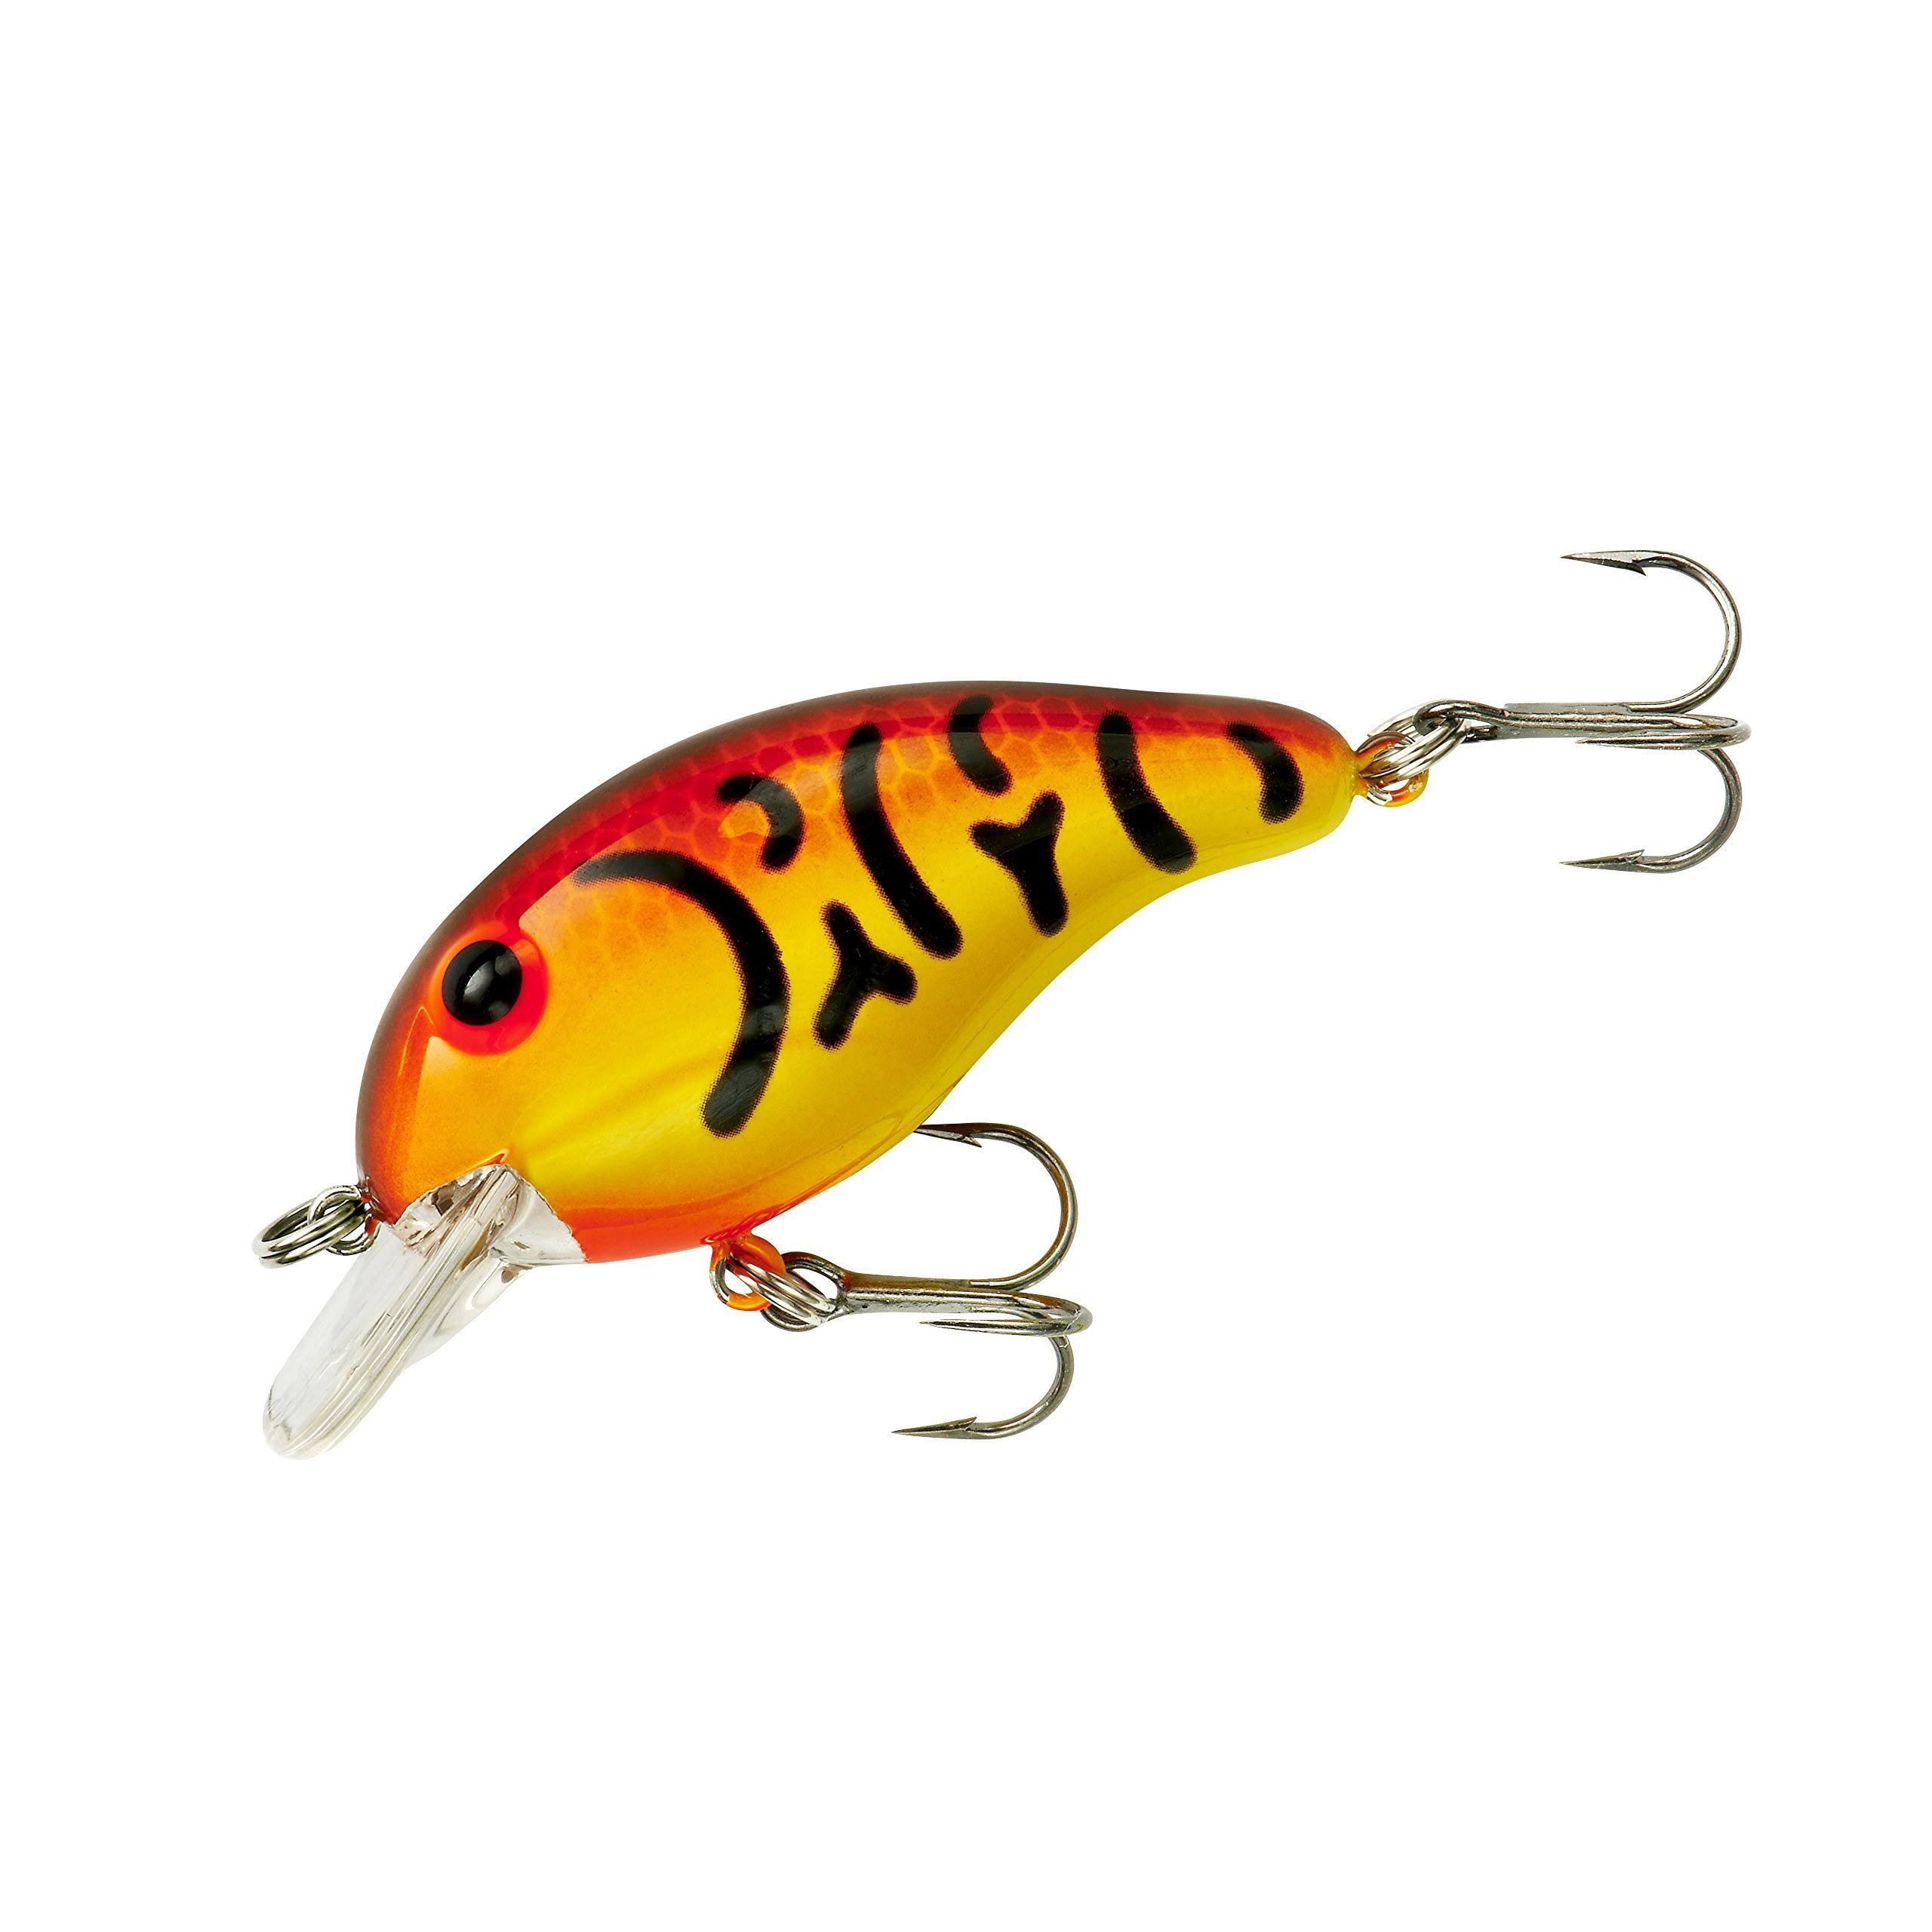 Bandit Lures 100 Series Crankbait - Spring Crawfish Yellow, 1/4oz